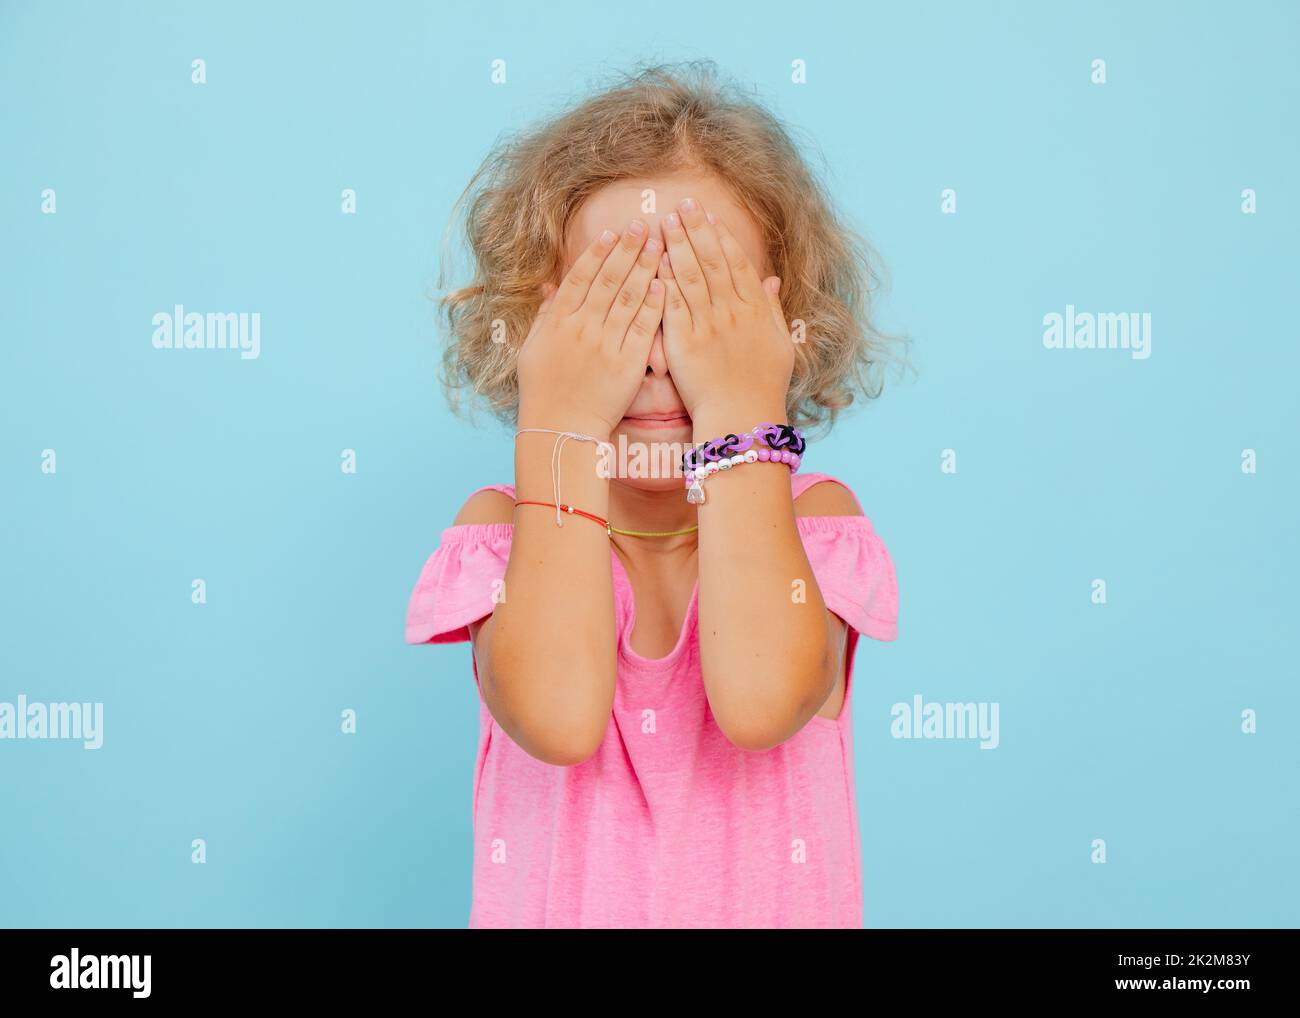 Portrait von verängstigten kleinen Mädchen, das die Augen mit Händen bedeckt, die das Gesicht auf blauem Hintergrund verbergen. Emotionen, Ängste, Studio. Stockfoto